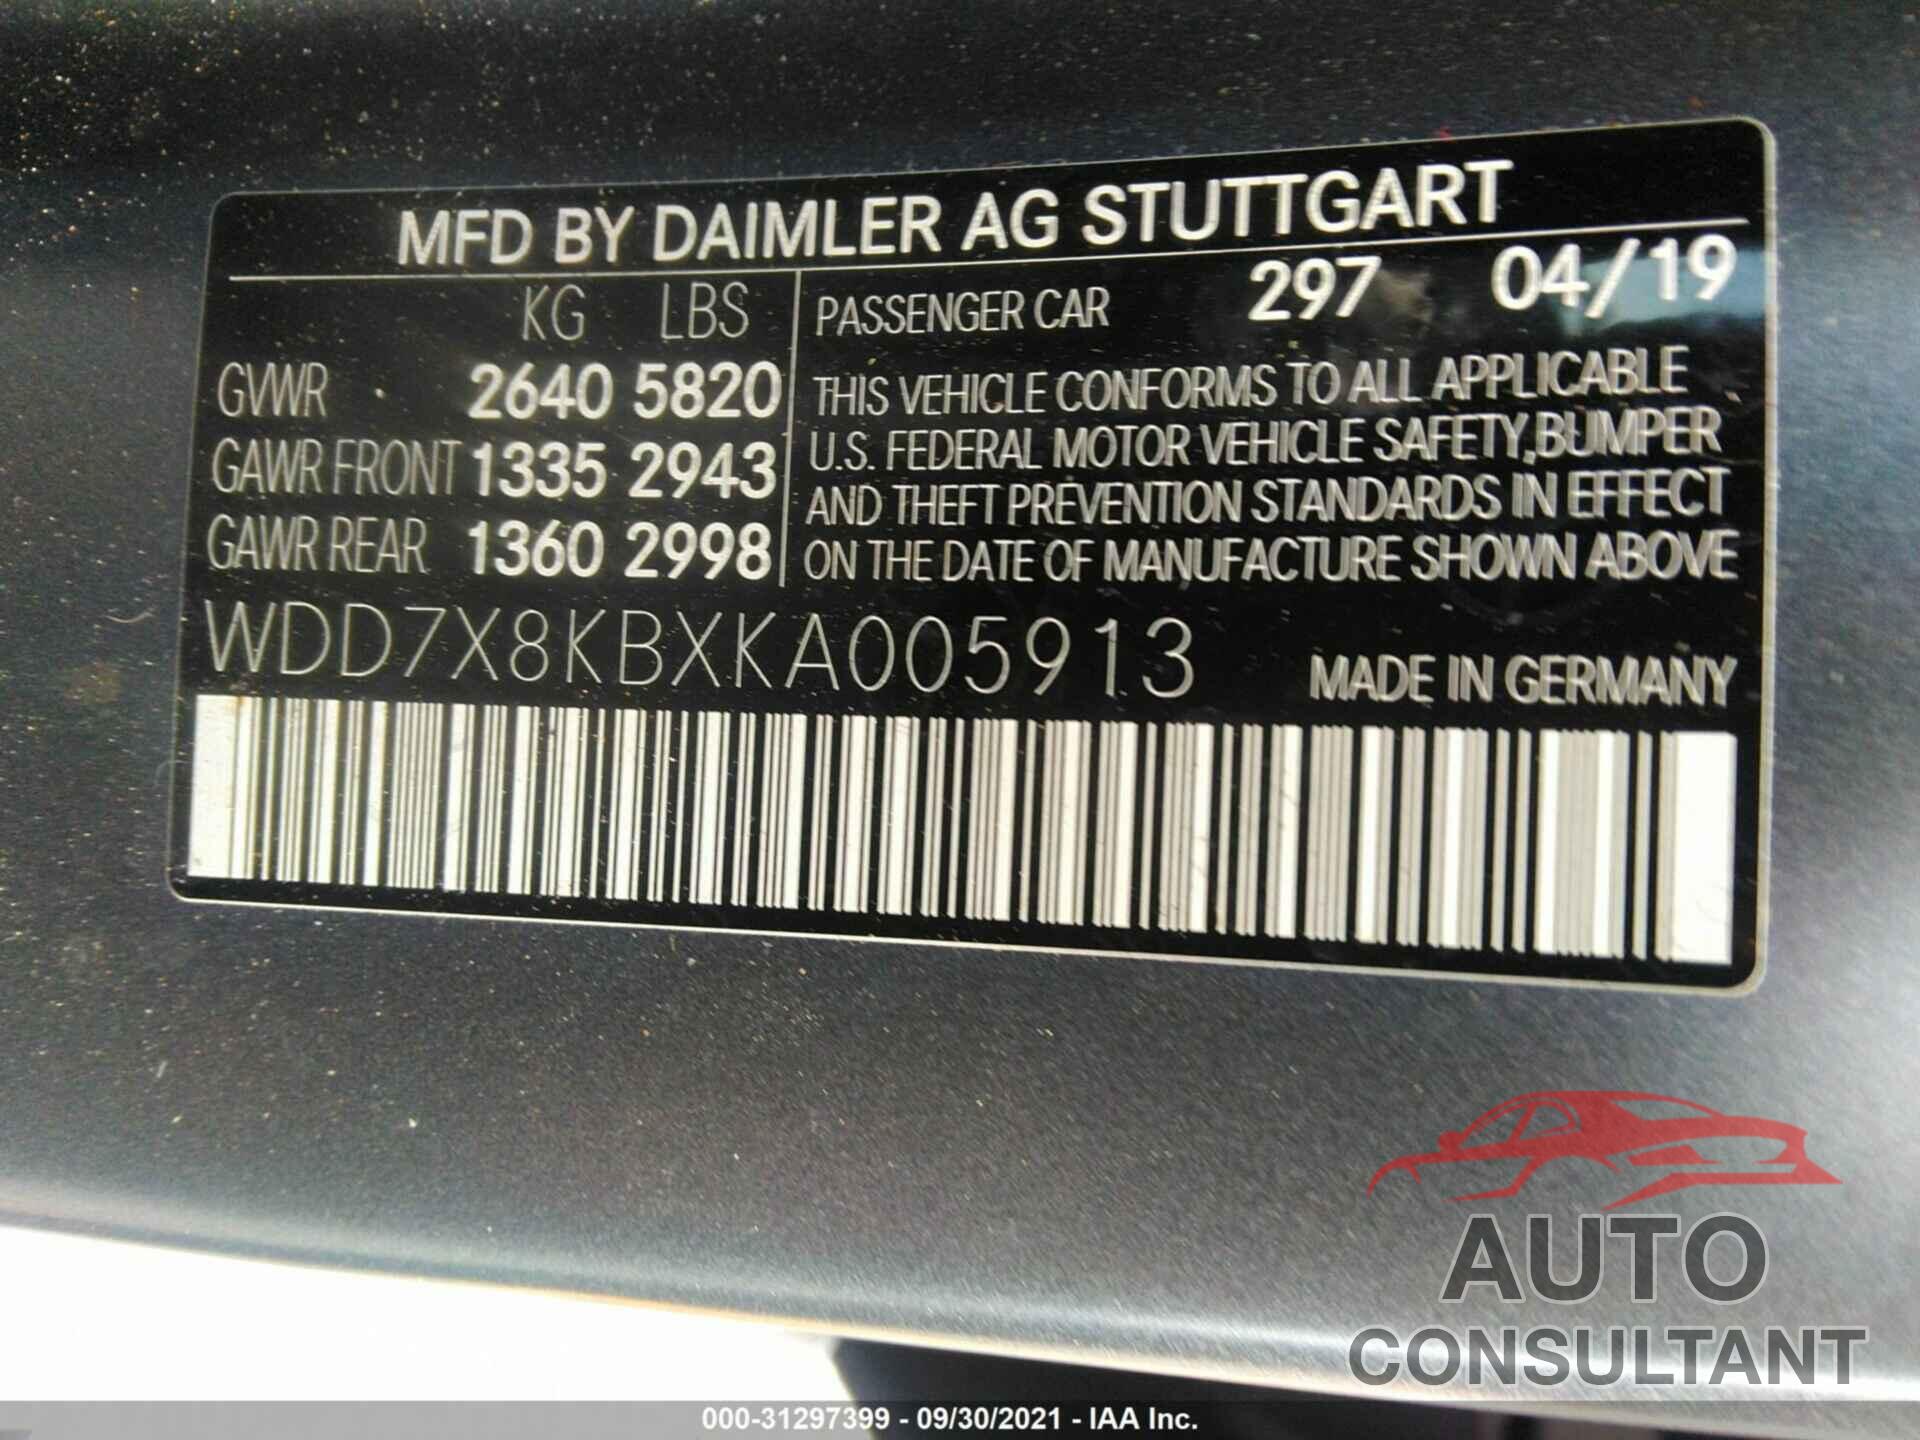 MERCEDES-BENZ AMG GT 2019 - WDD7X8KBXKA005913